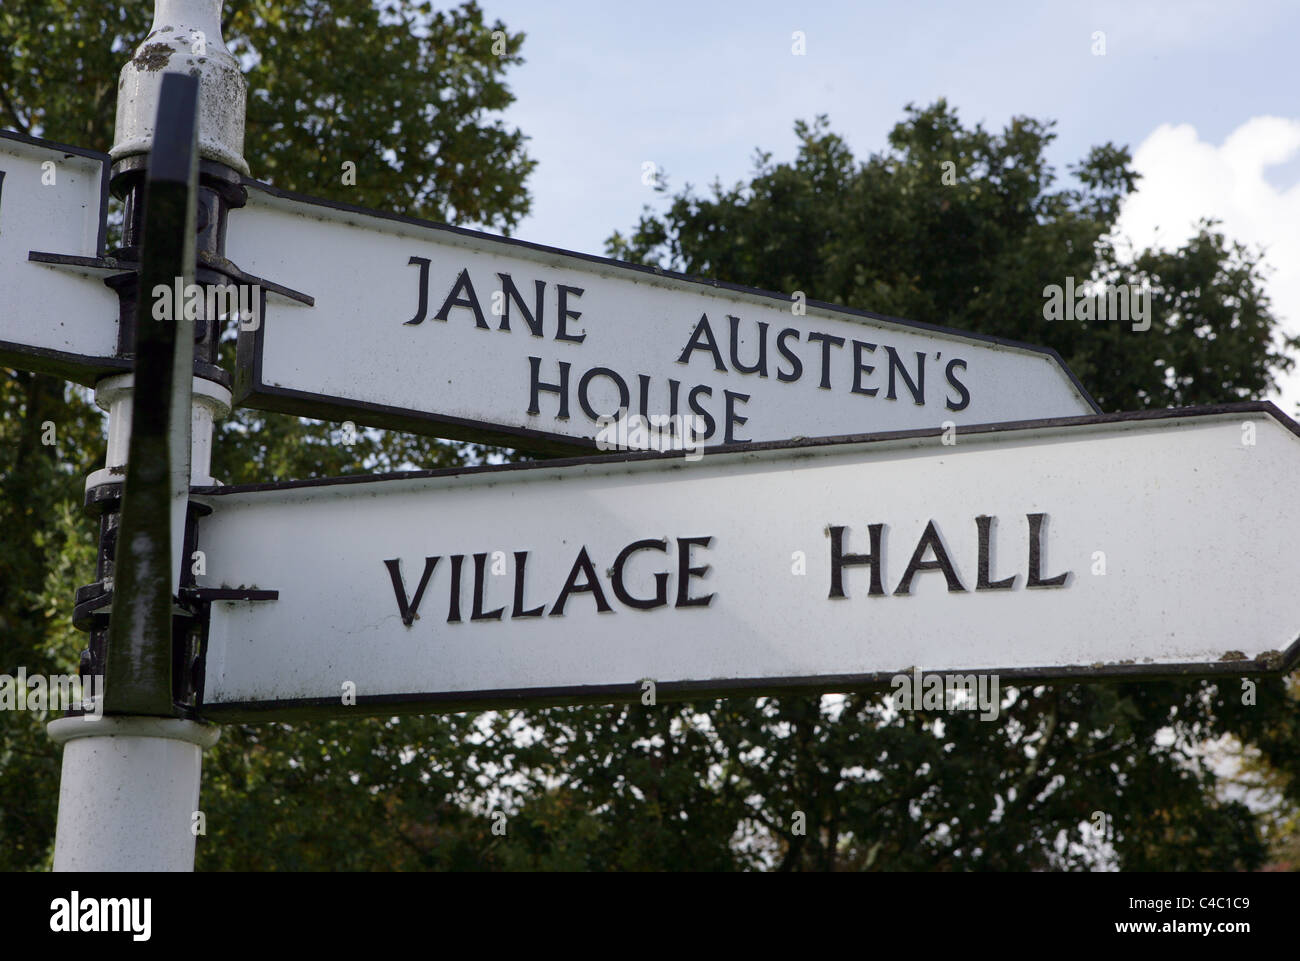 Panneau indiquant la maison de Jane Austen à chawton, dans le Hampshire, Royaume-Uni. Banque D'Images